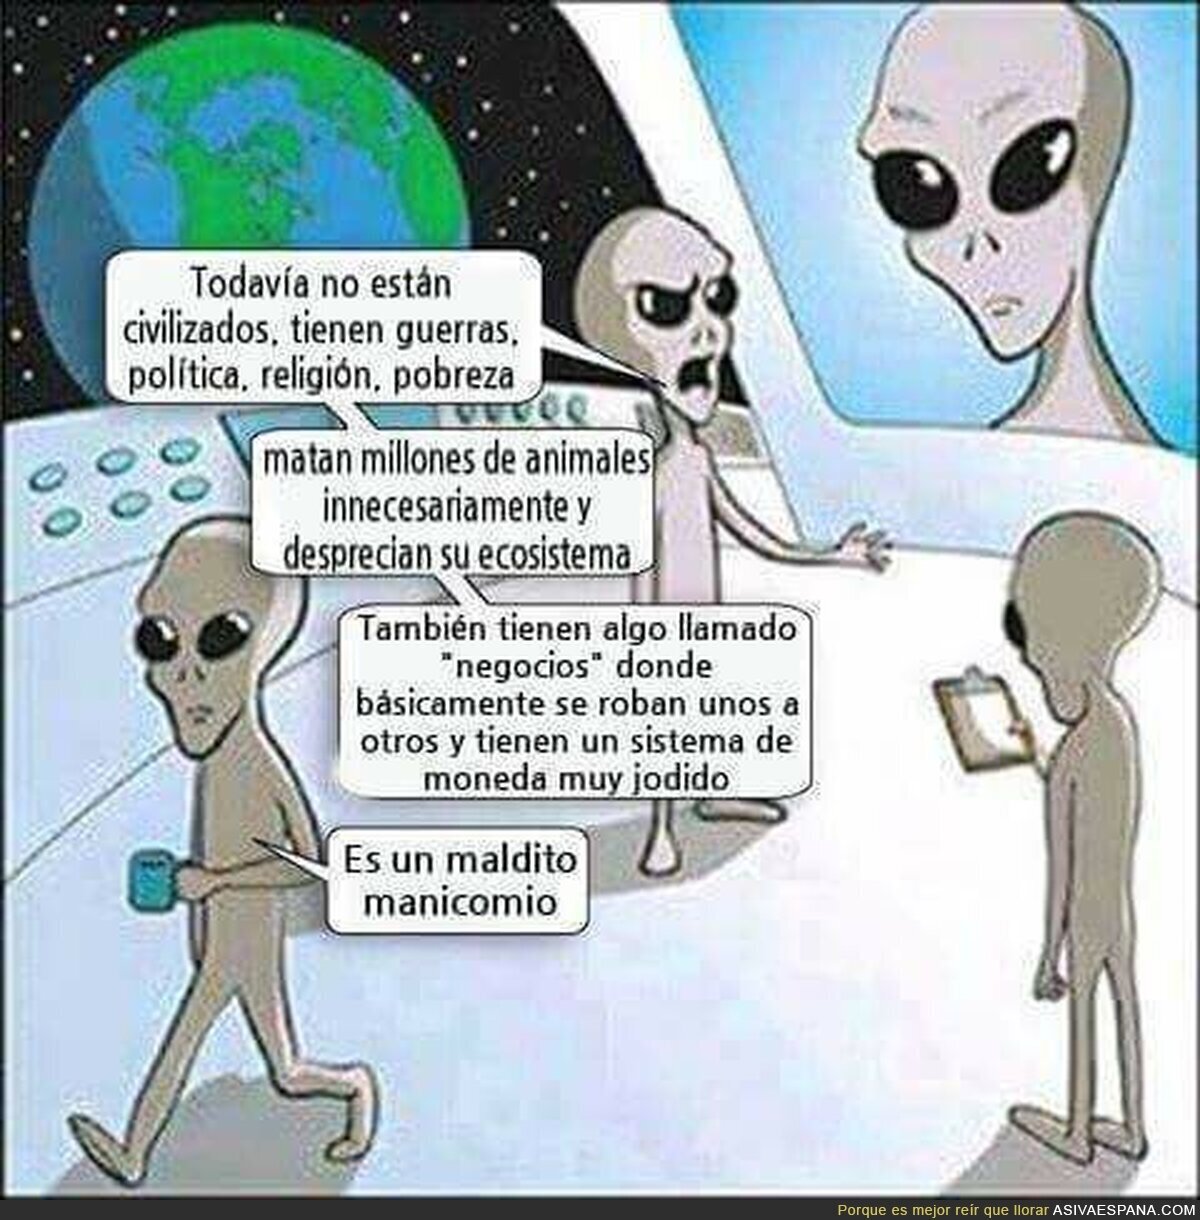 Y por eso no nos visitan los aliens